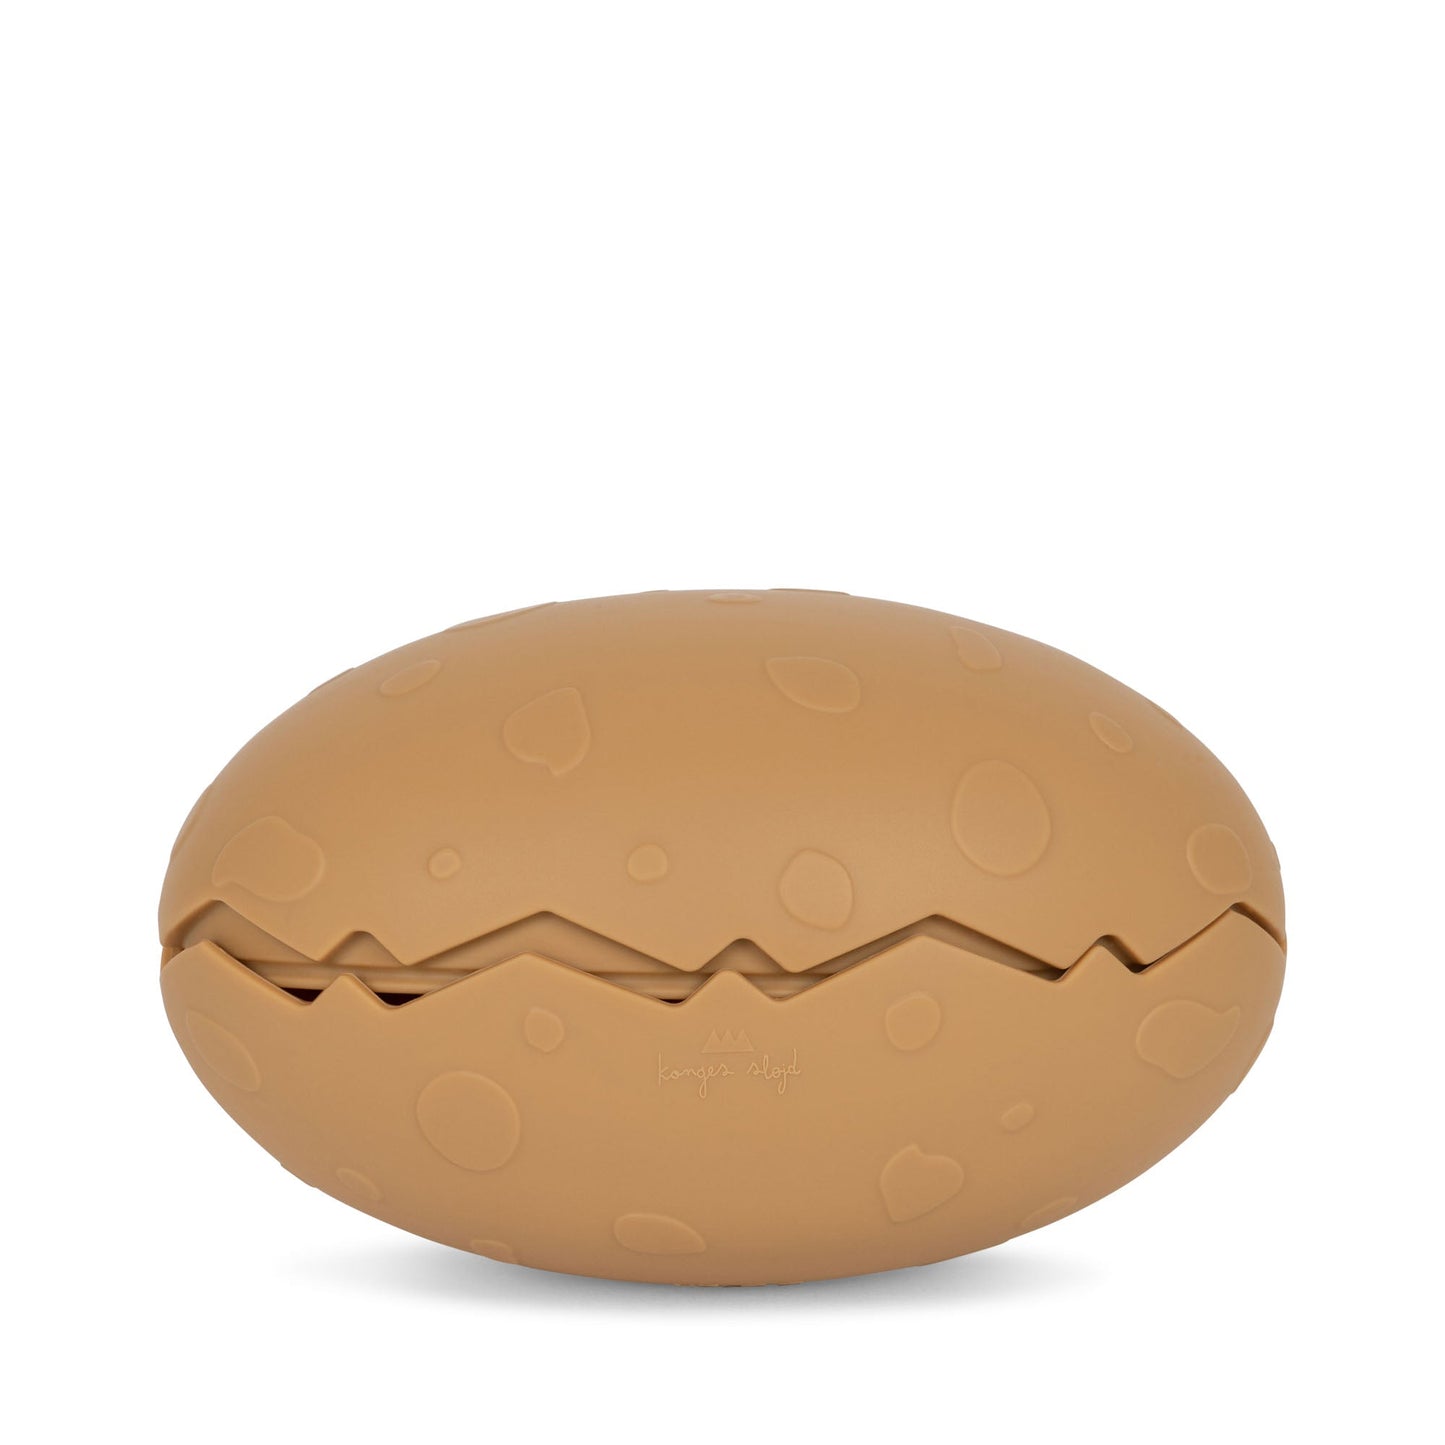 Silicone bath toy Dino Egg - Almond mix